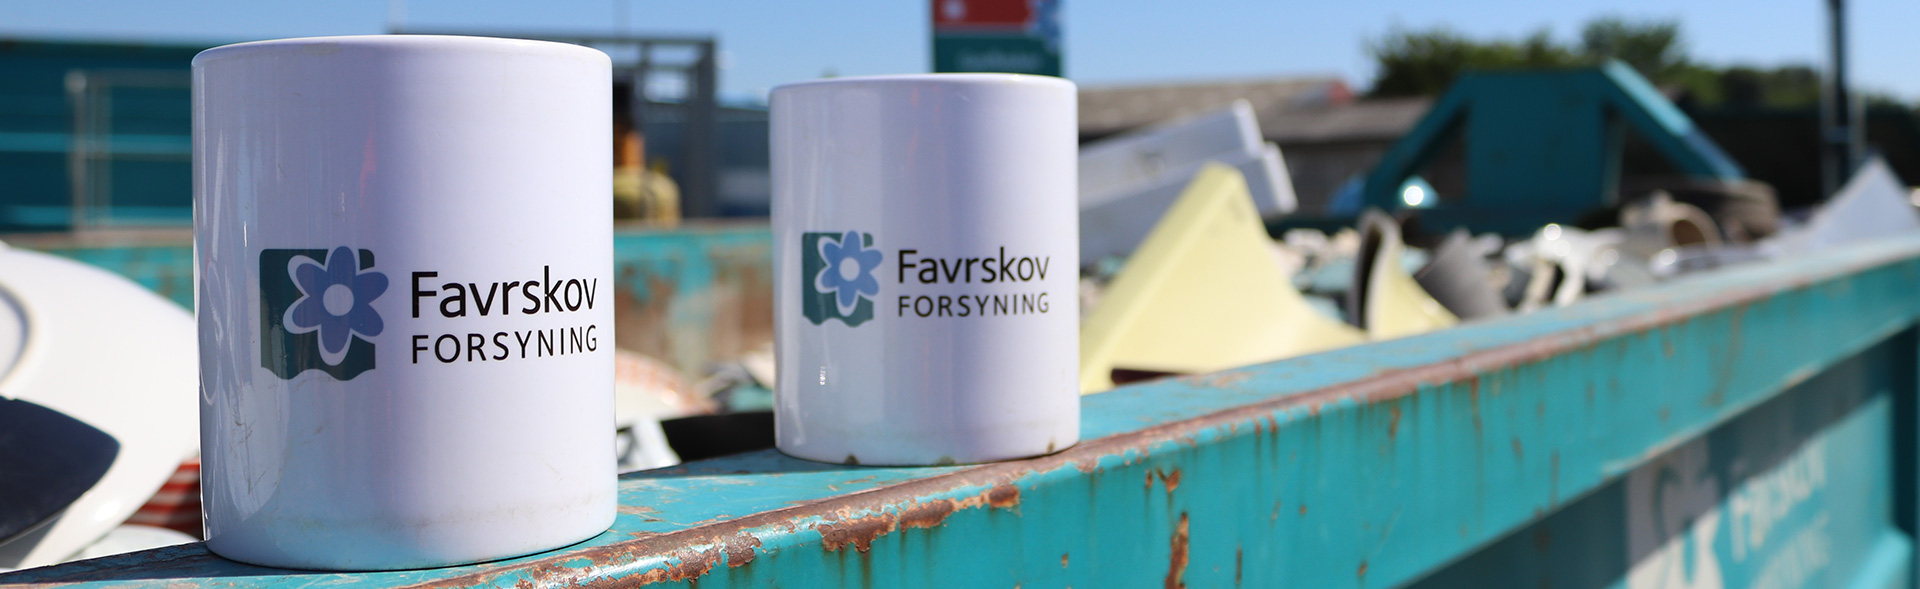 To kopper med Favrskov Forsyning logo står på container på på genbrugsplads